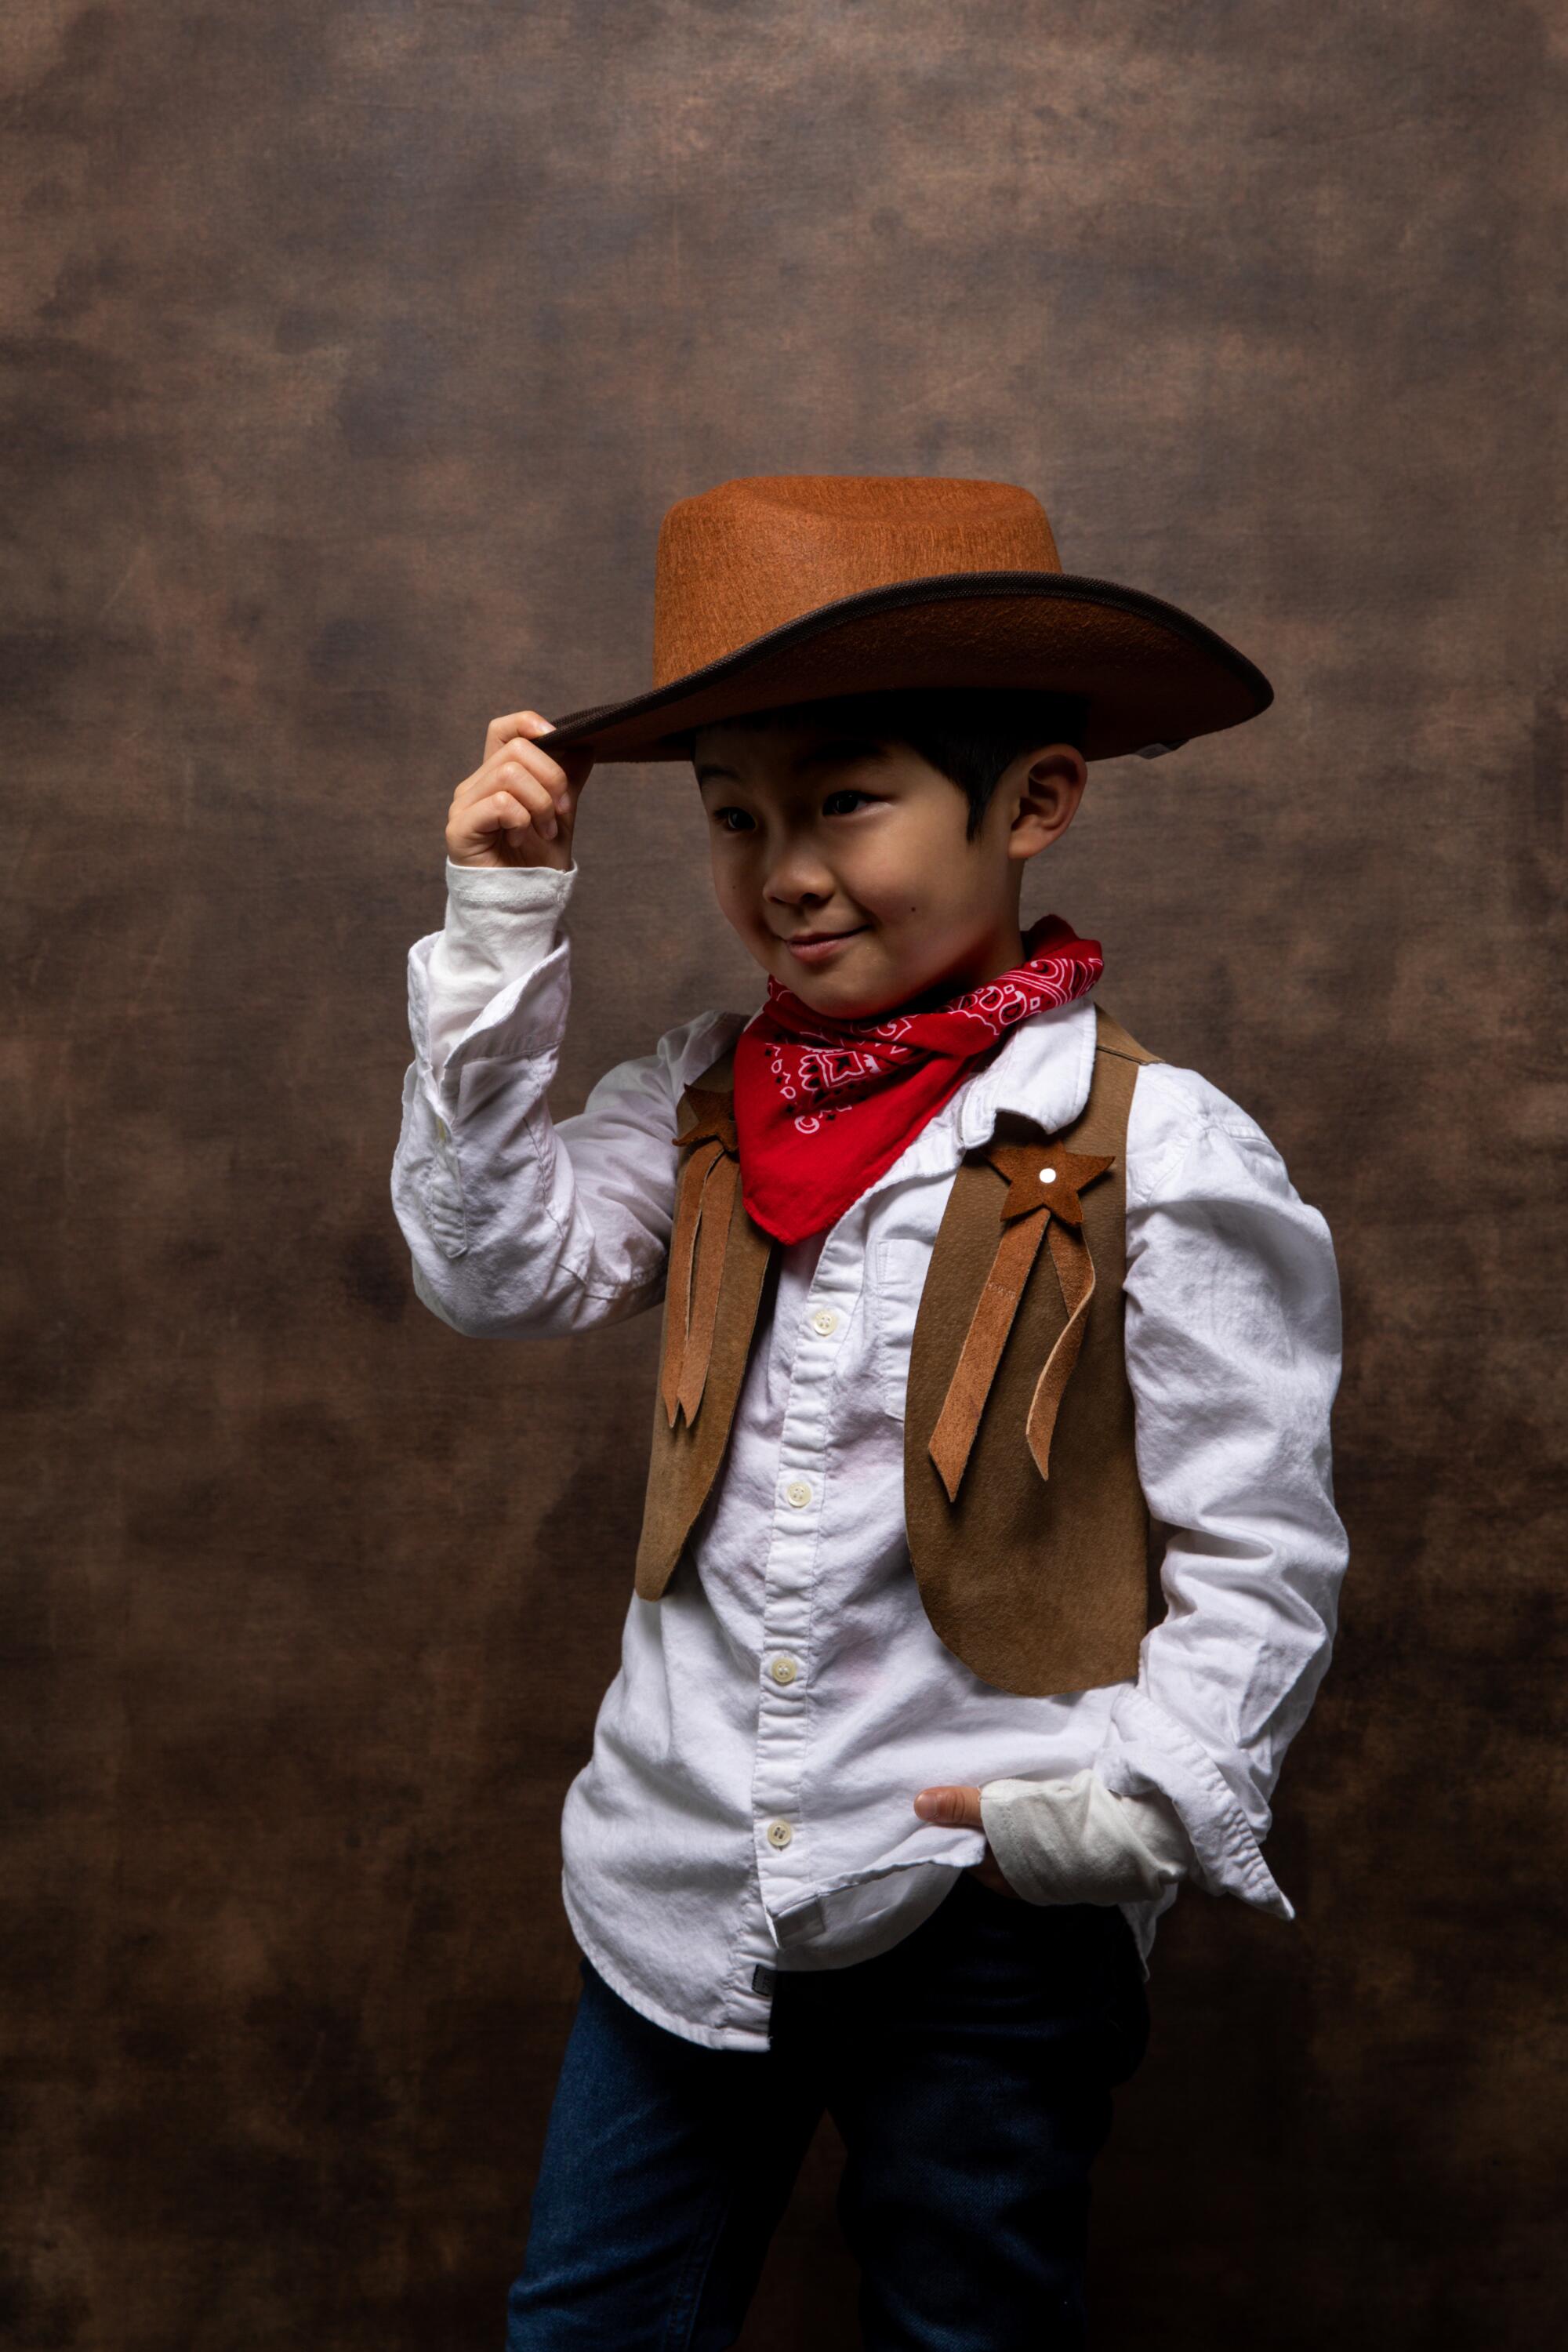 A cowboy costumed Alan Kim of “Minari” tips his hat.